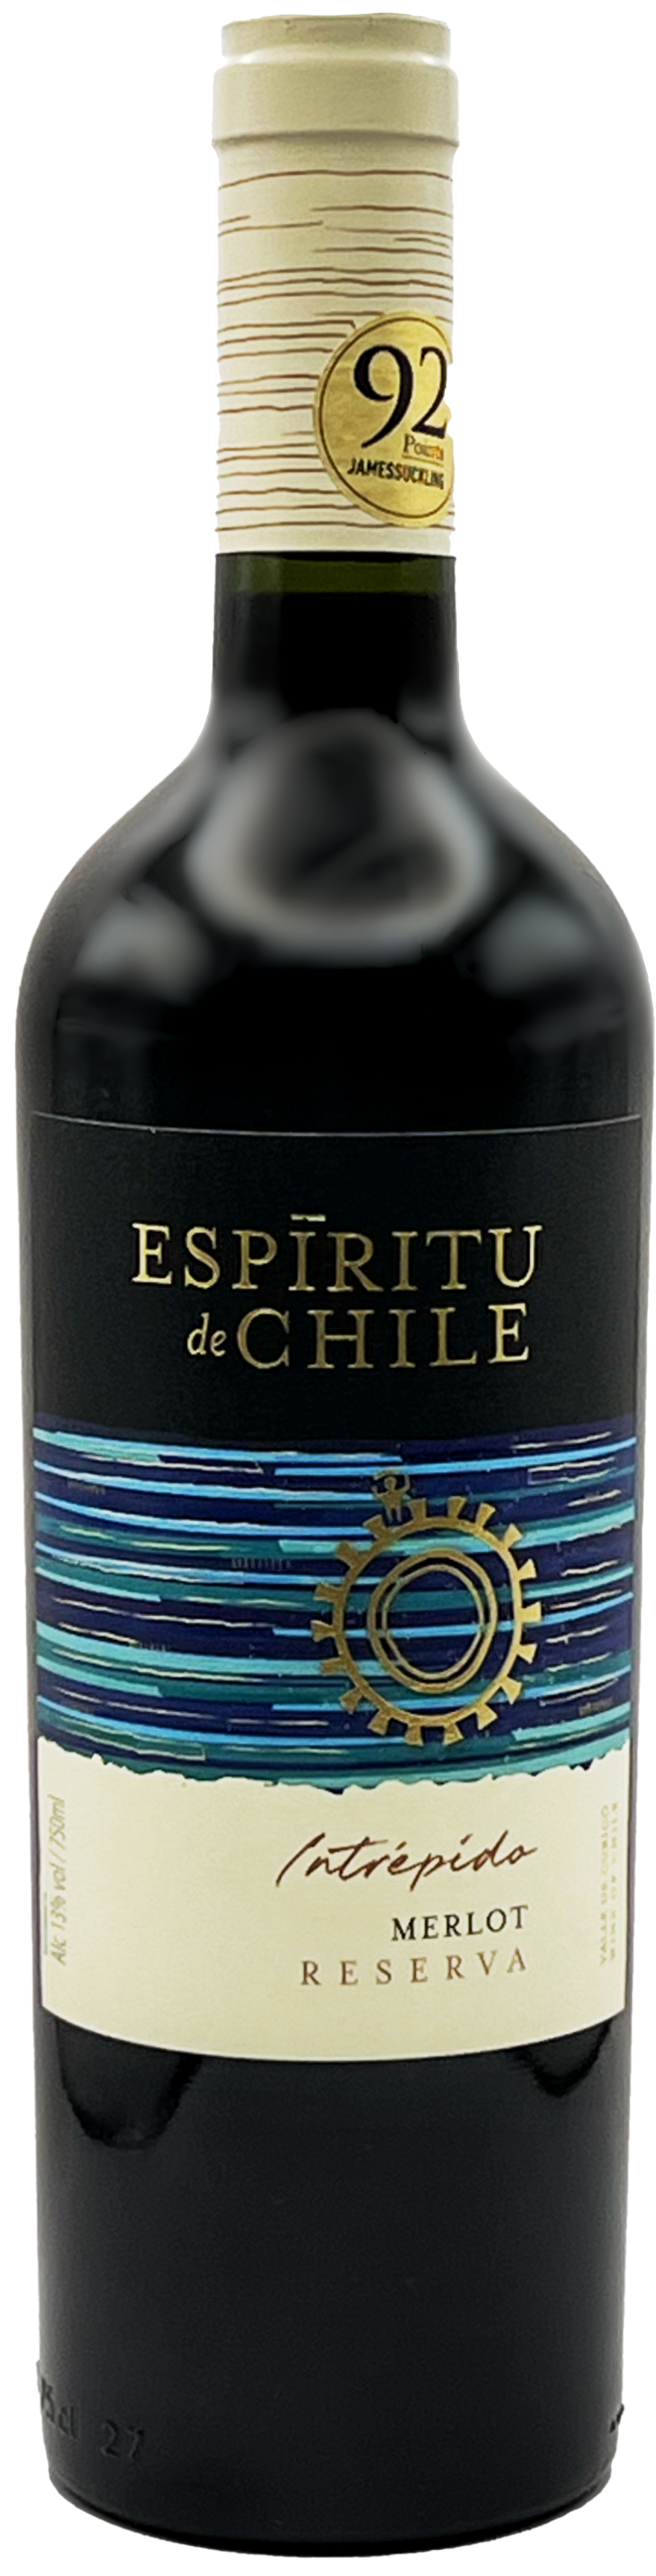 Espiritu de Bottle 2019 Chile Values - Merlot Reserva